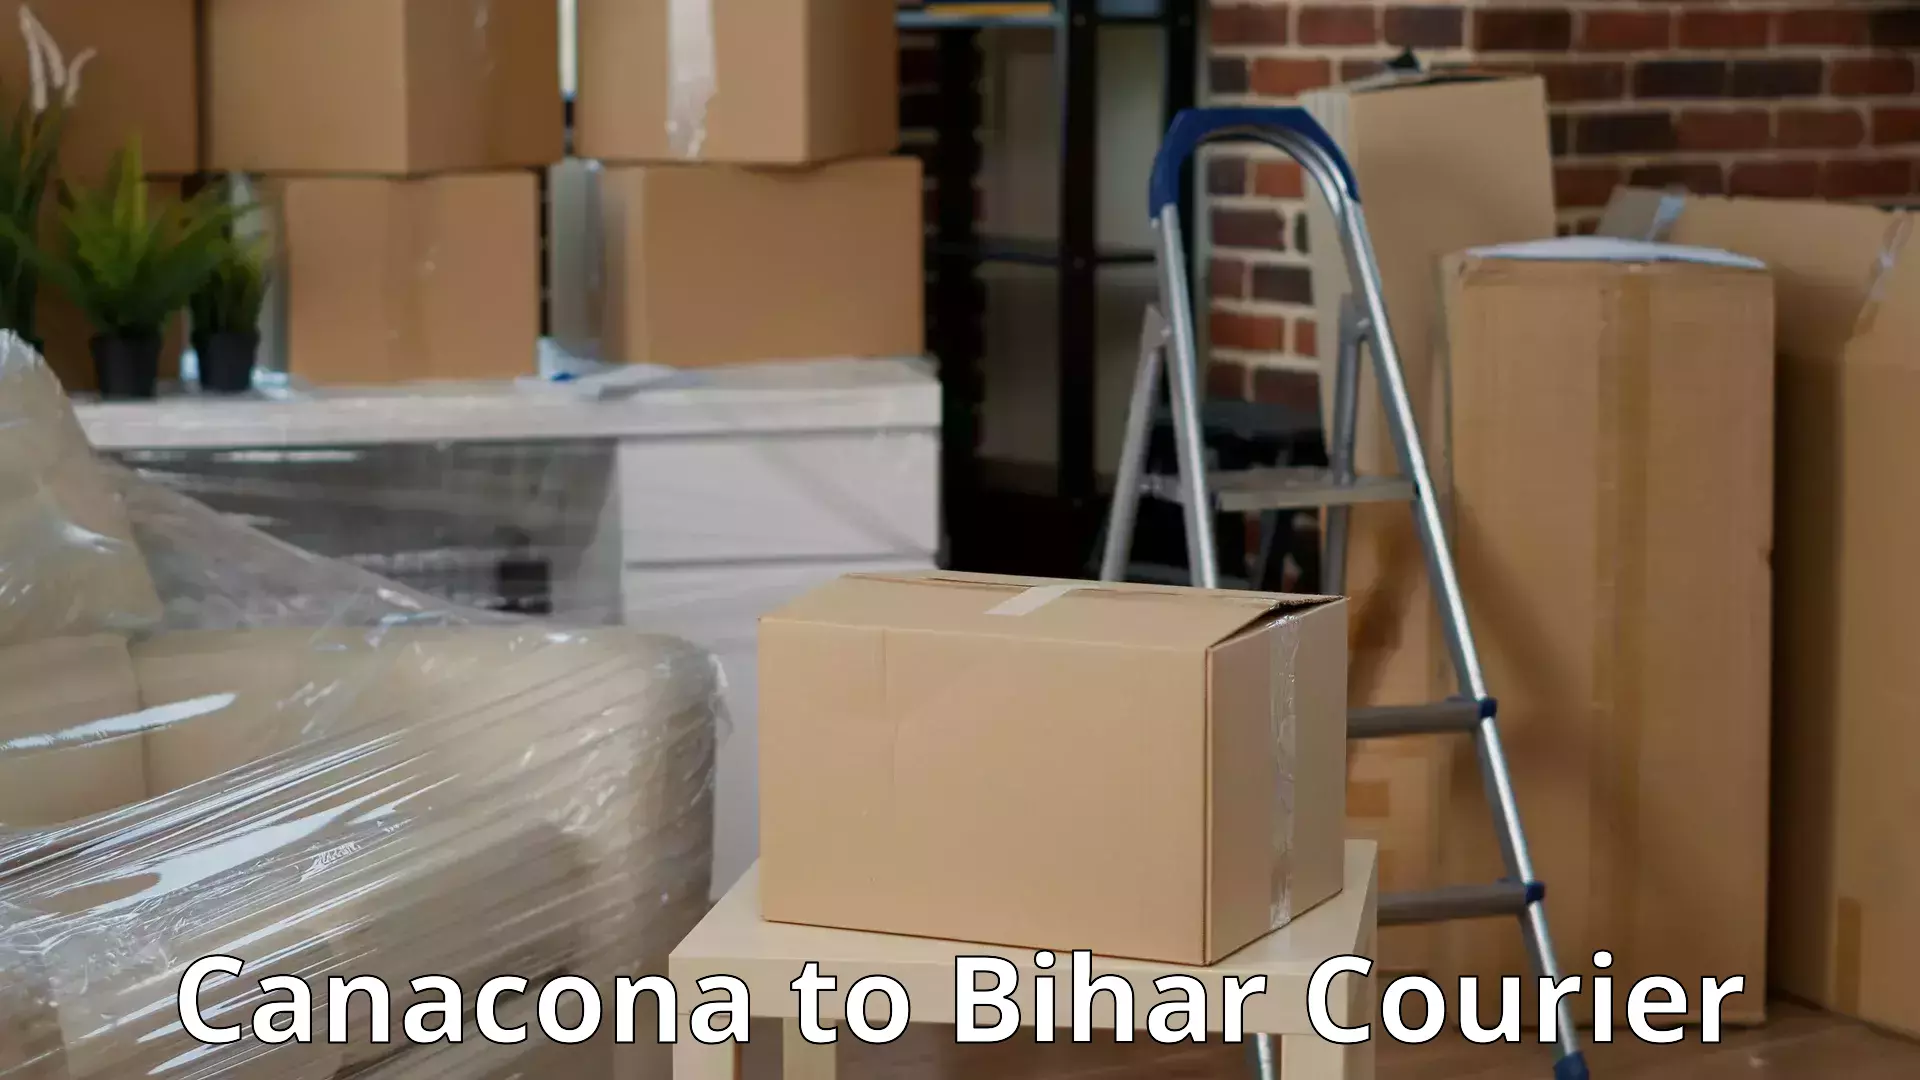 Stress-free moving Canacona to Bihar